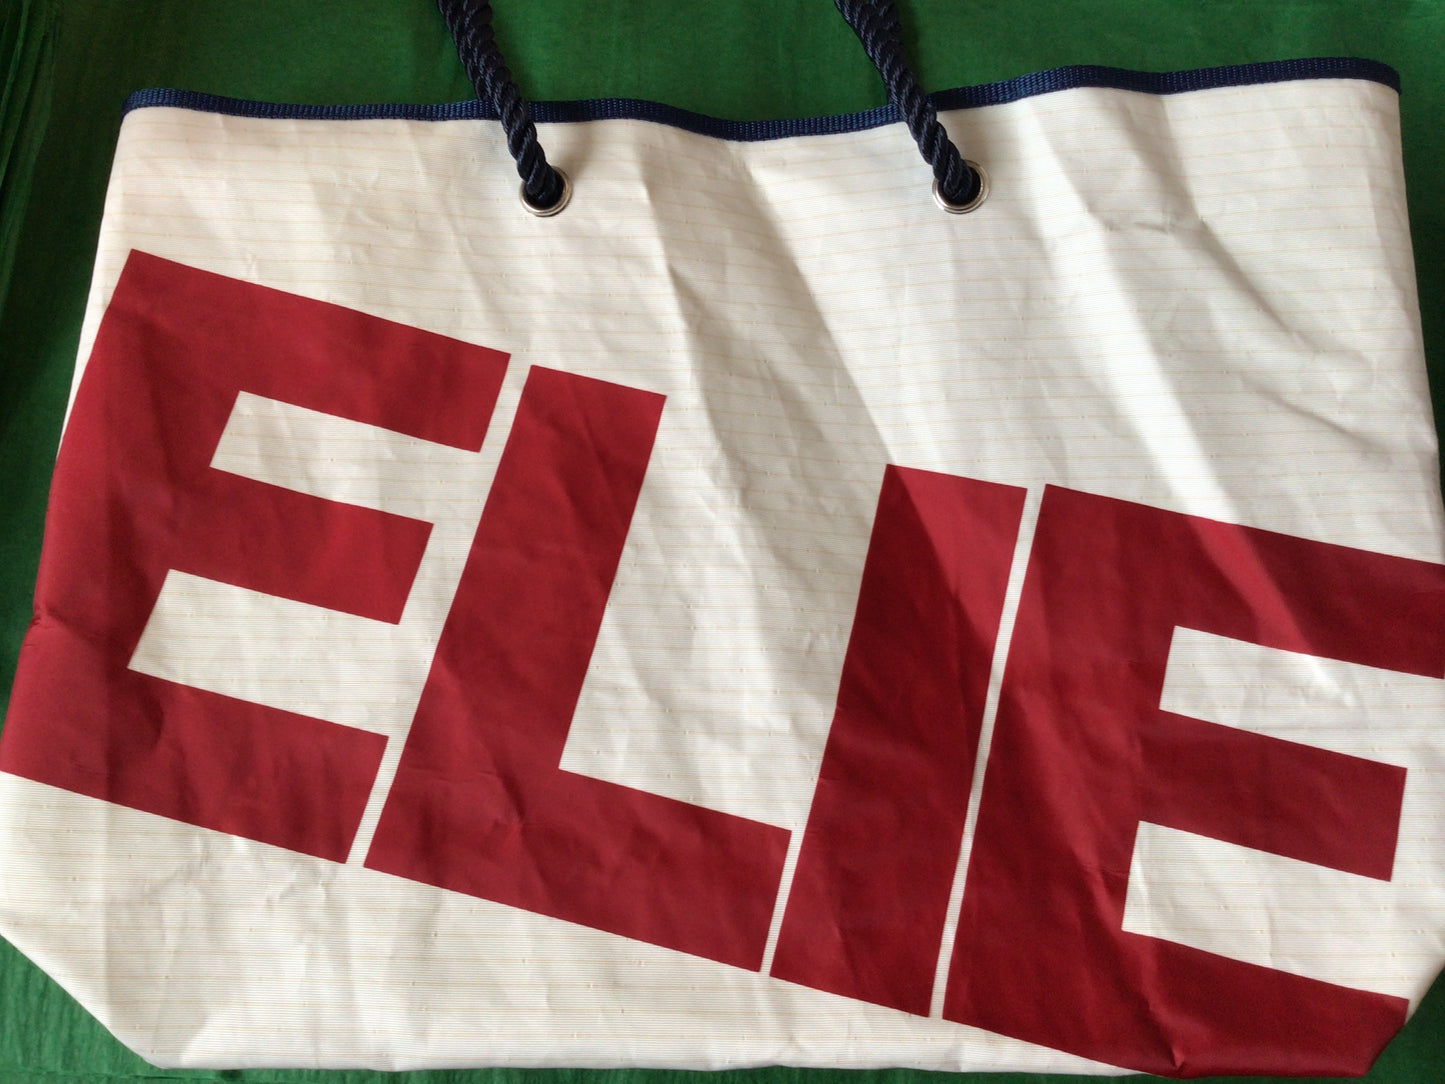 Elie large shopper sail cloth bag -no zip